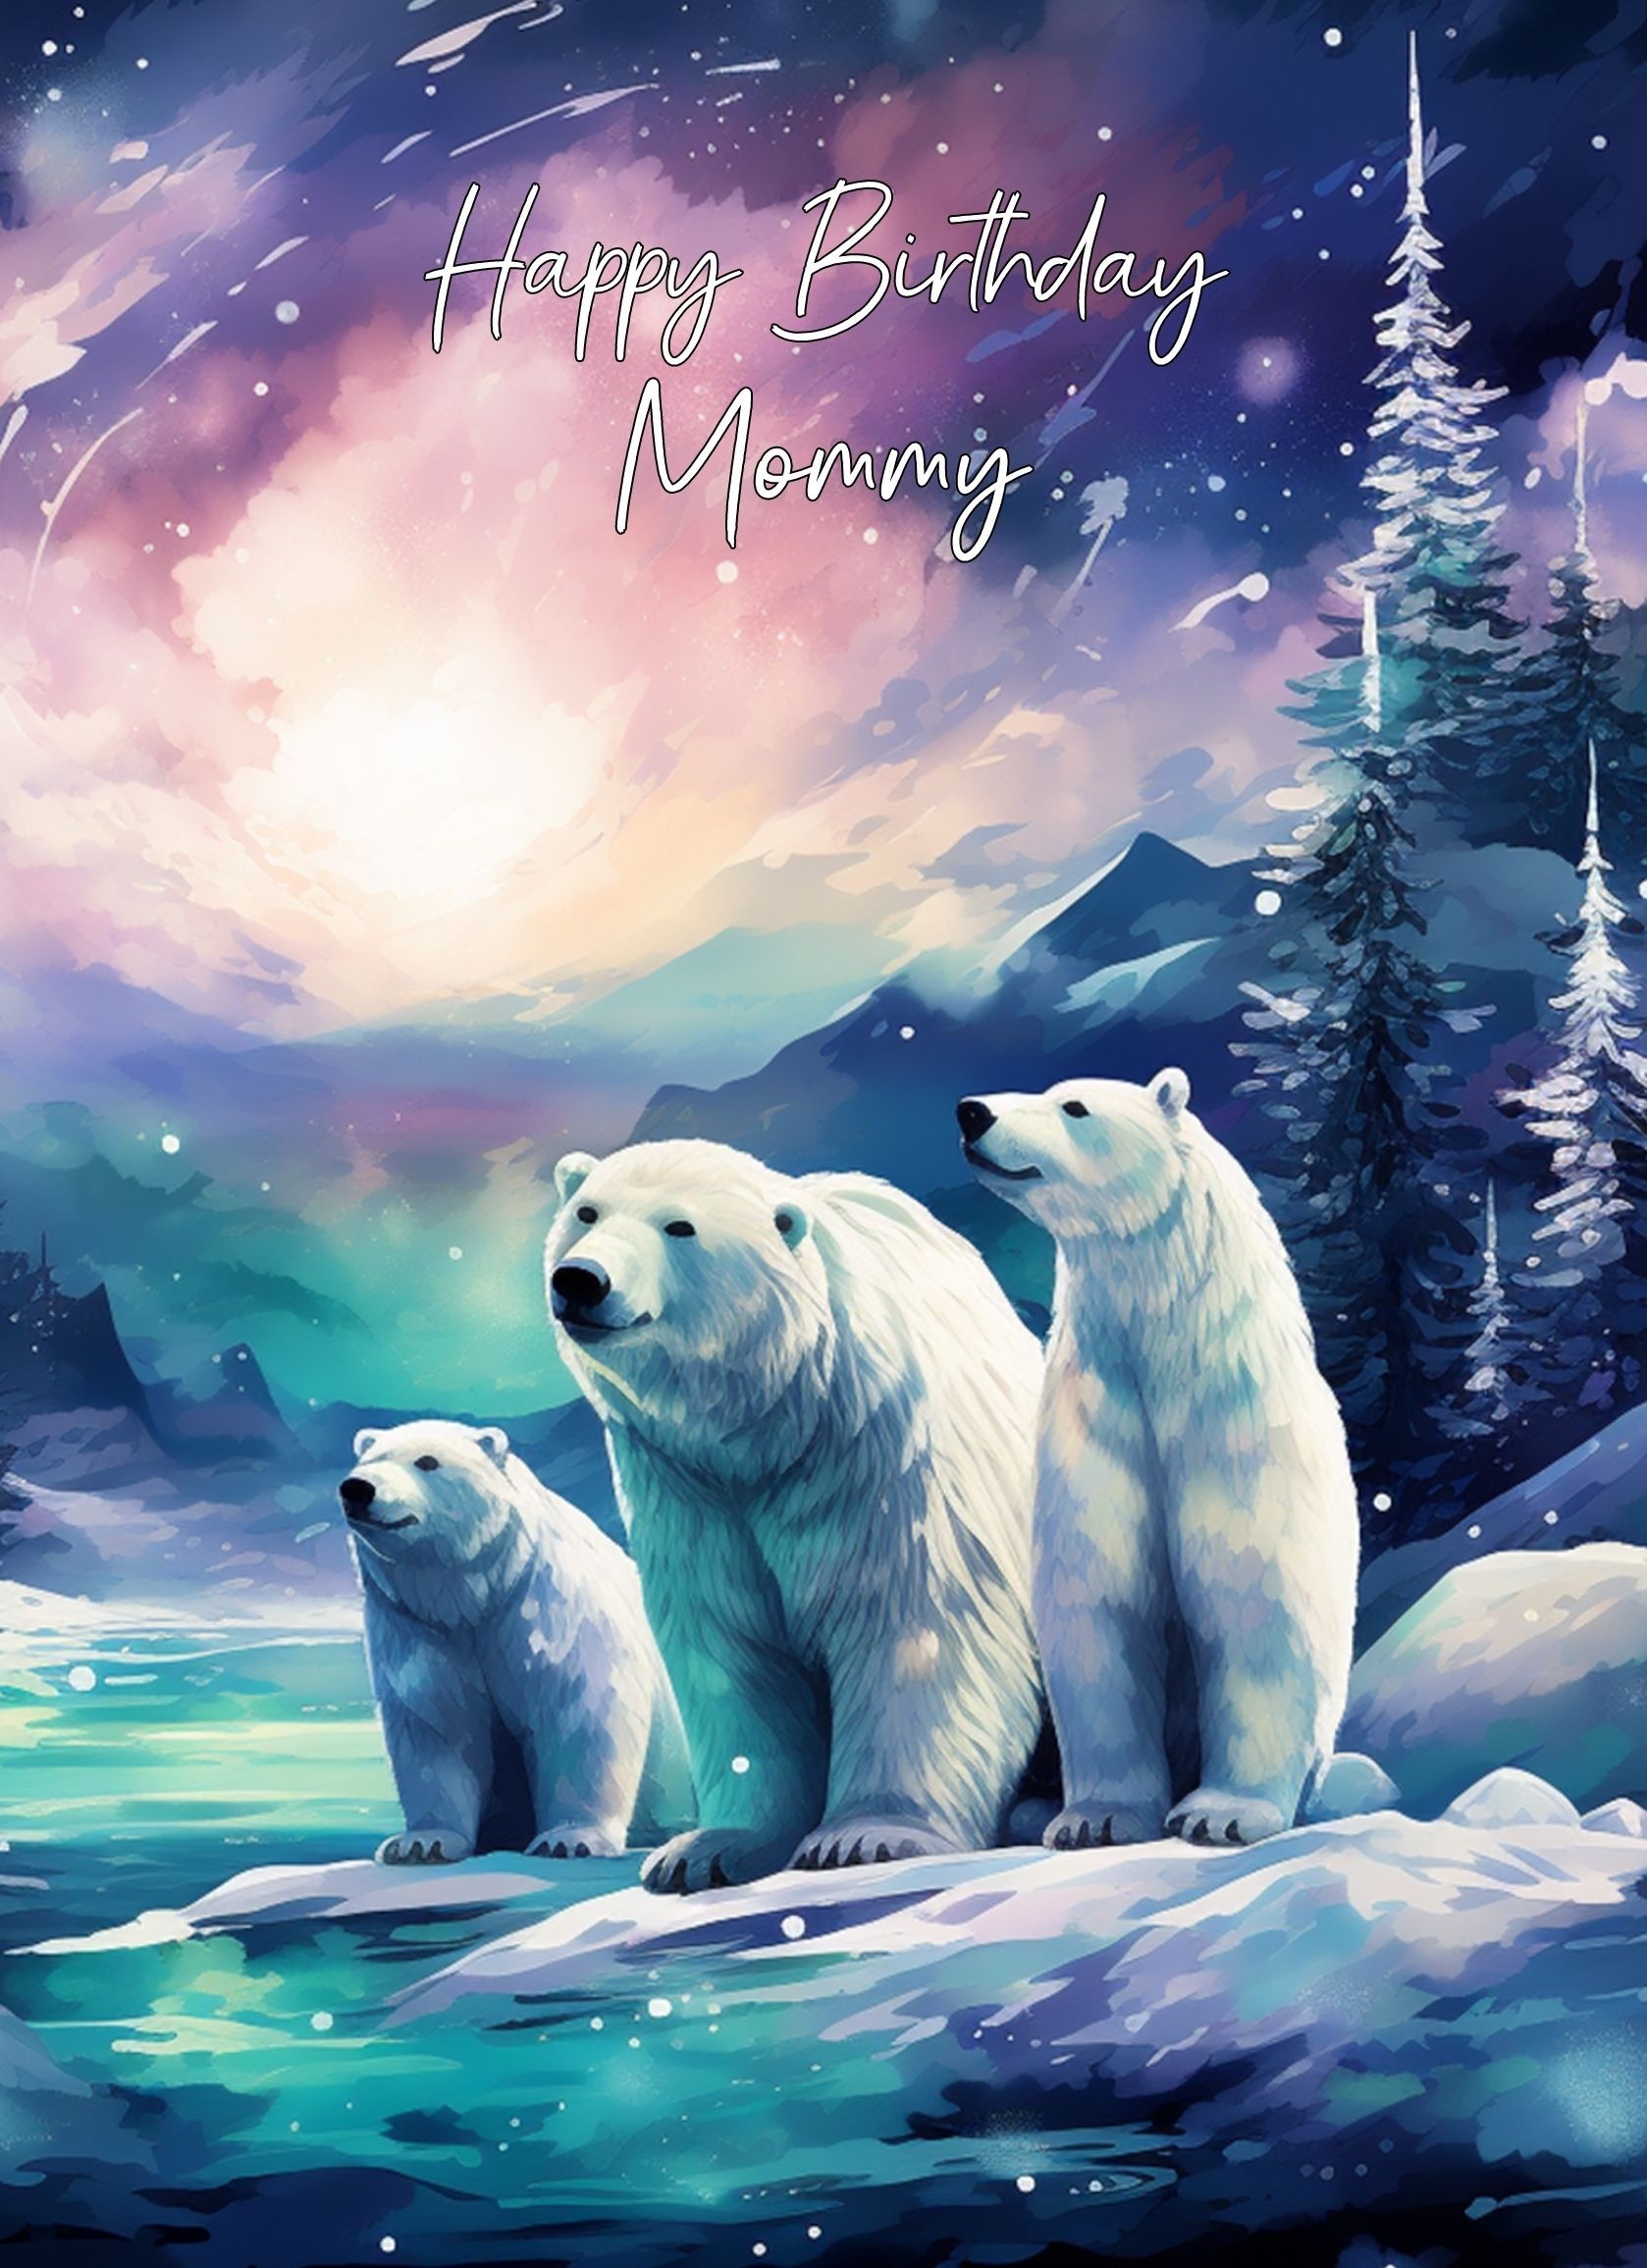 Polar Bear Art Birthday Card For Mommy (Design 1)